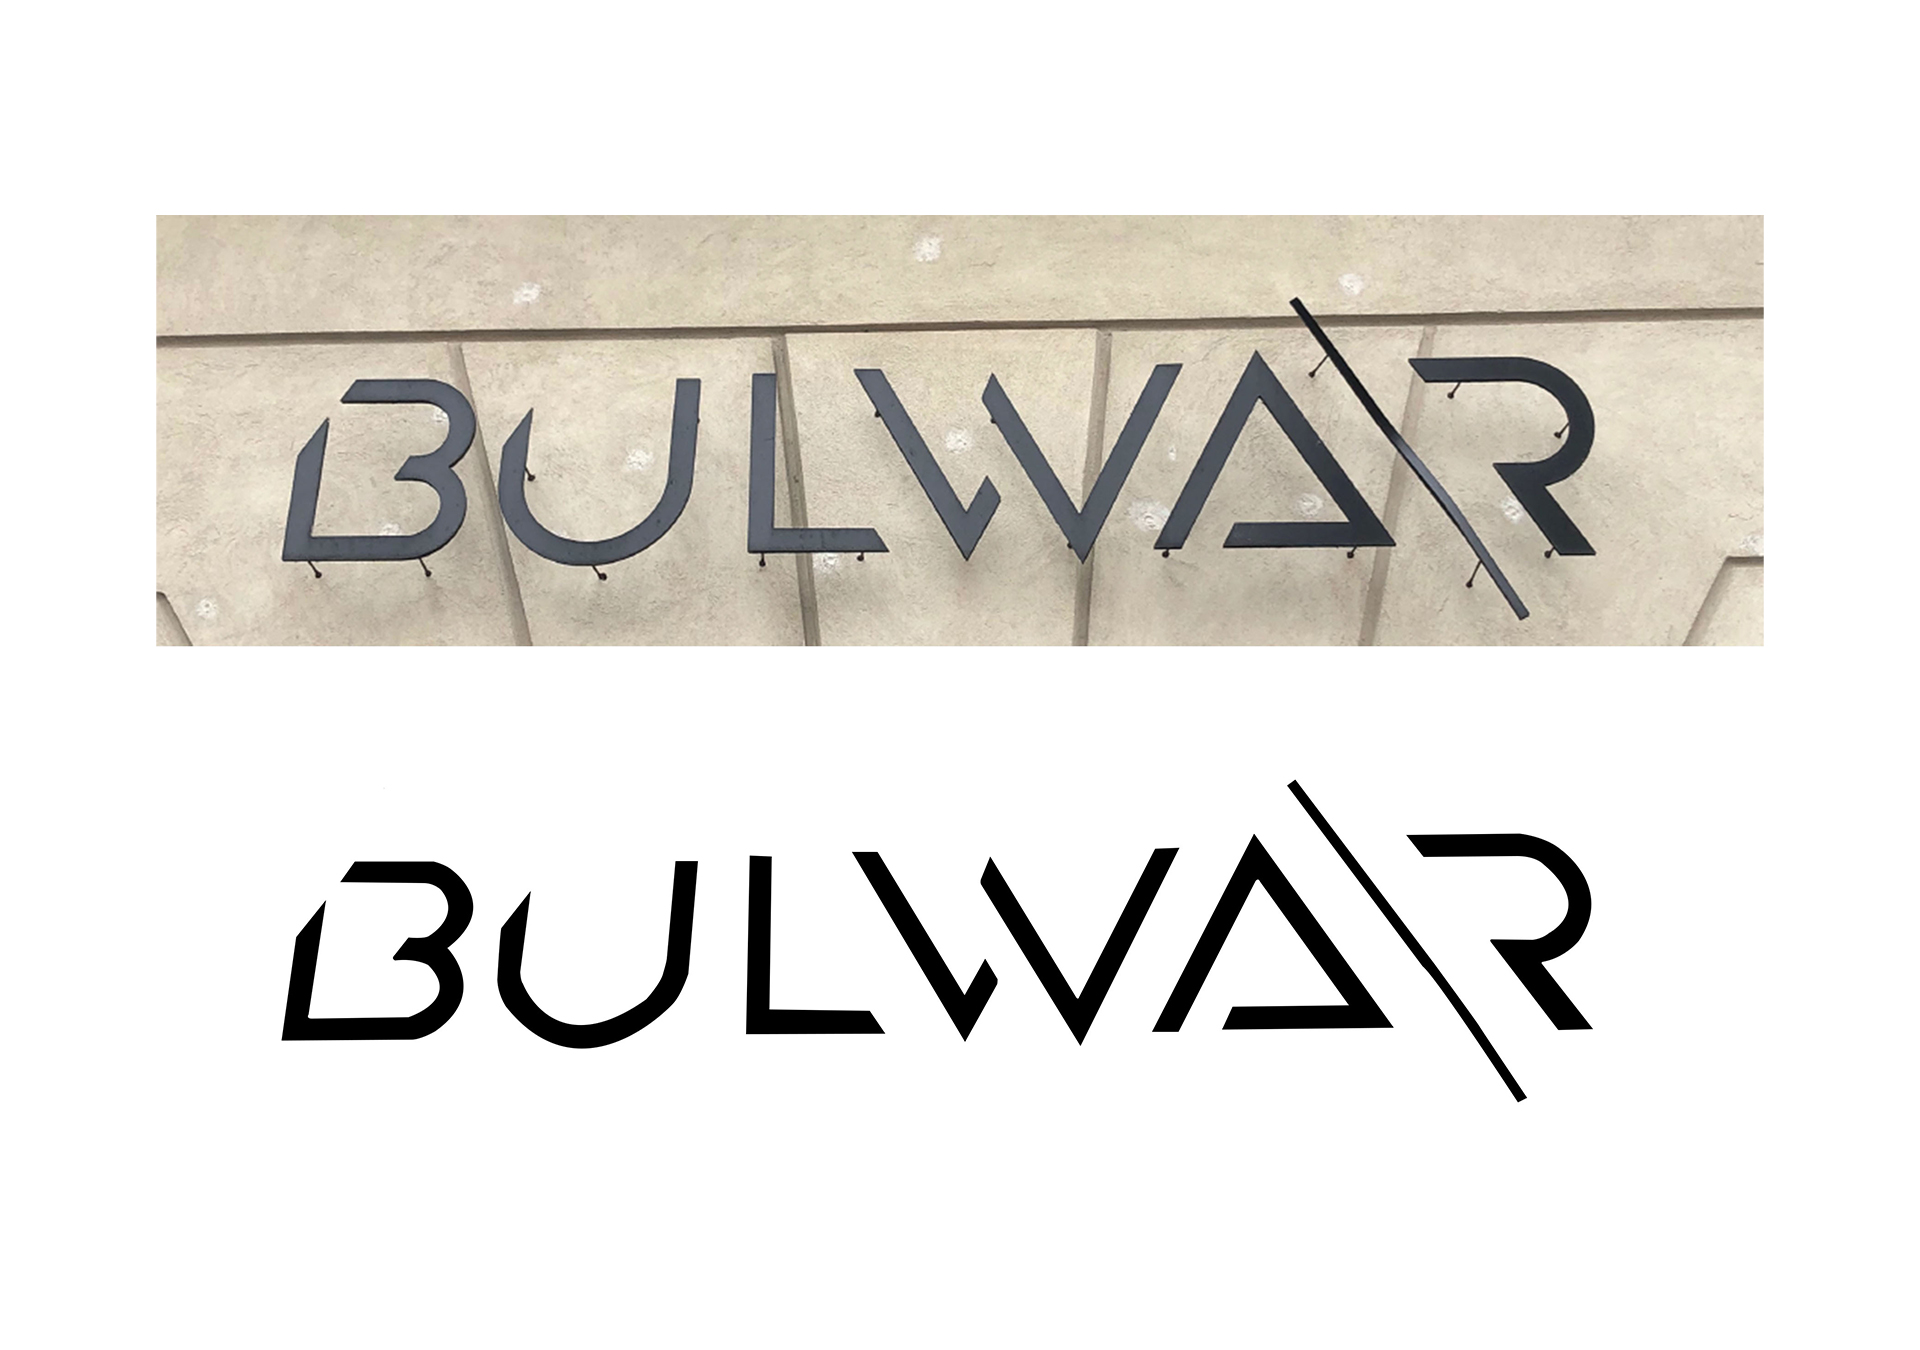 Zestawienie dwóch typografii, jedna jako fotografia z przestrzeni miejskiej BULWAR - druga to odwzorowany napis w wektorze.